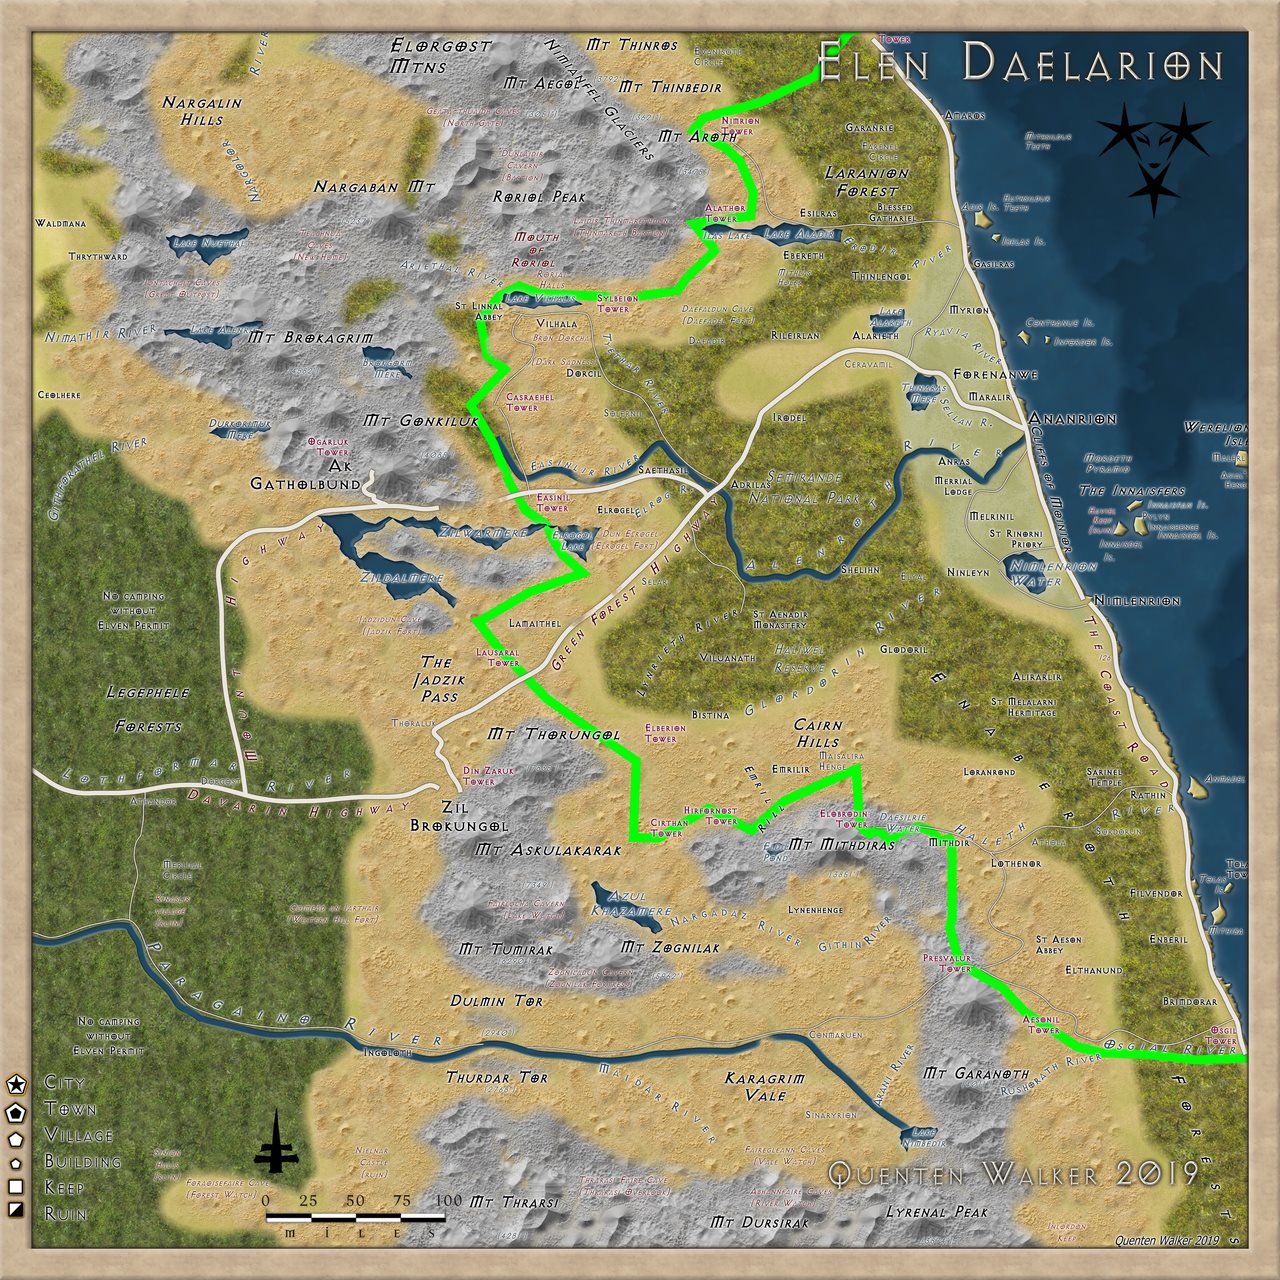 Nibirum Map: elen daelarion - 13th age by Quenten Walker